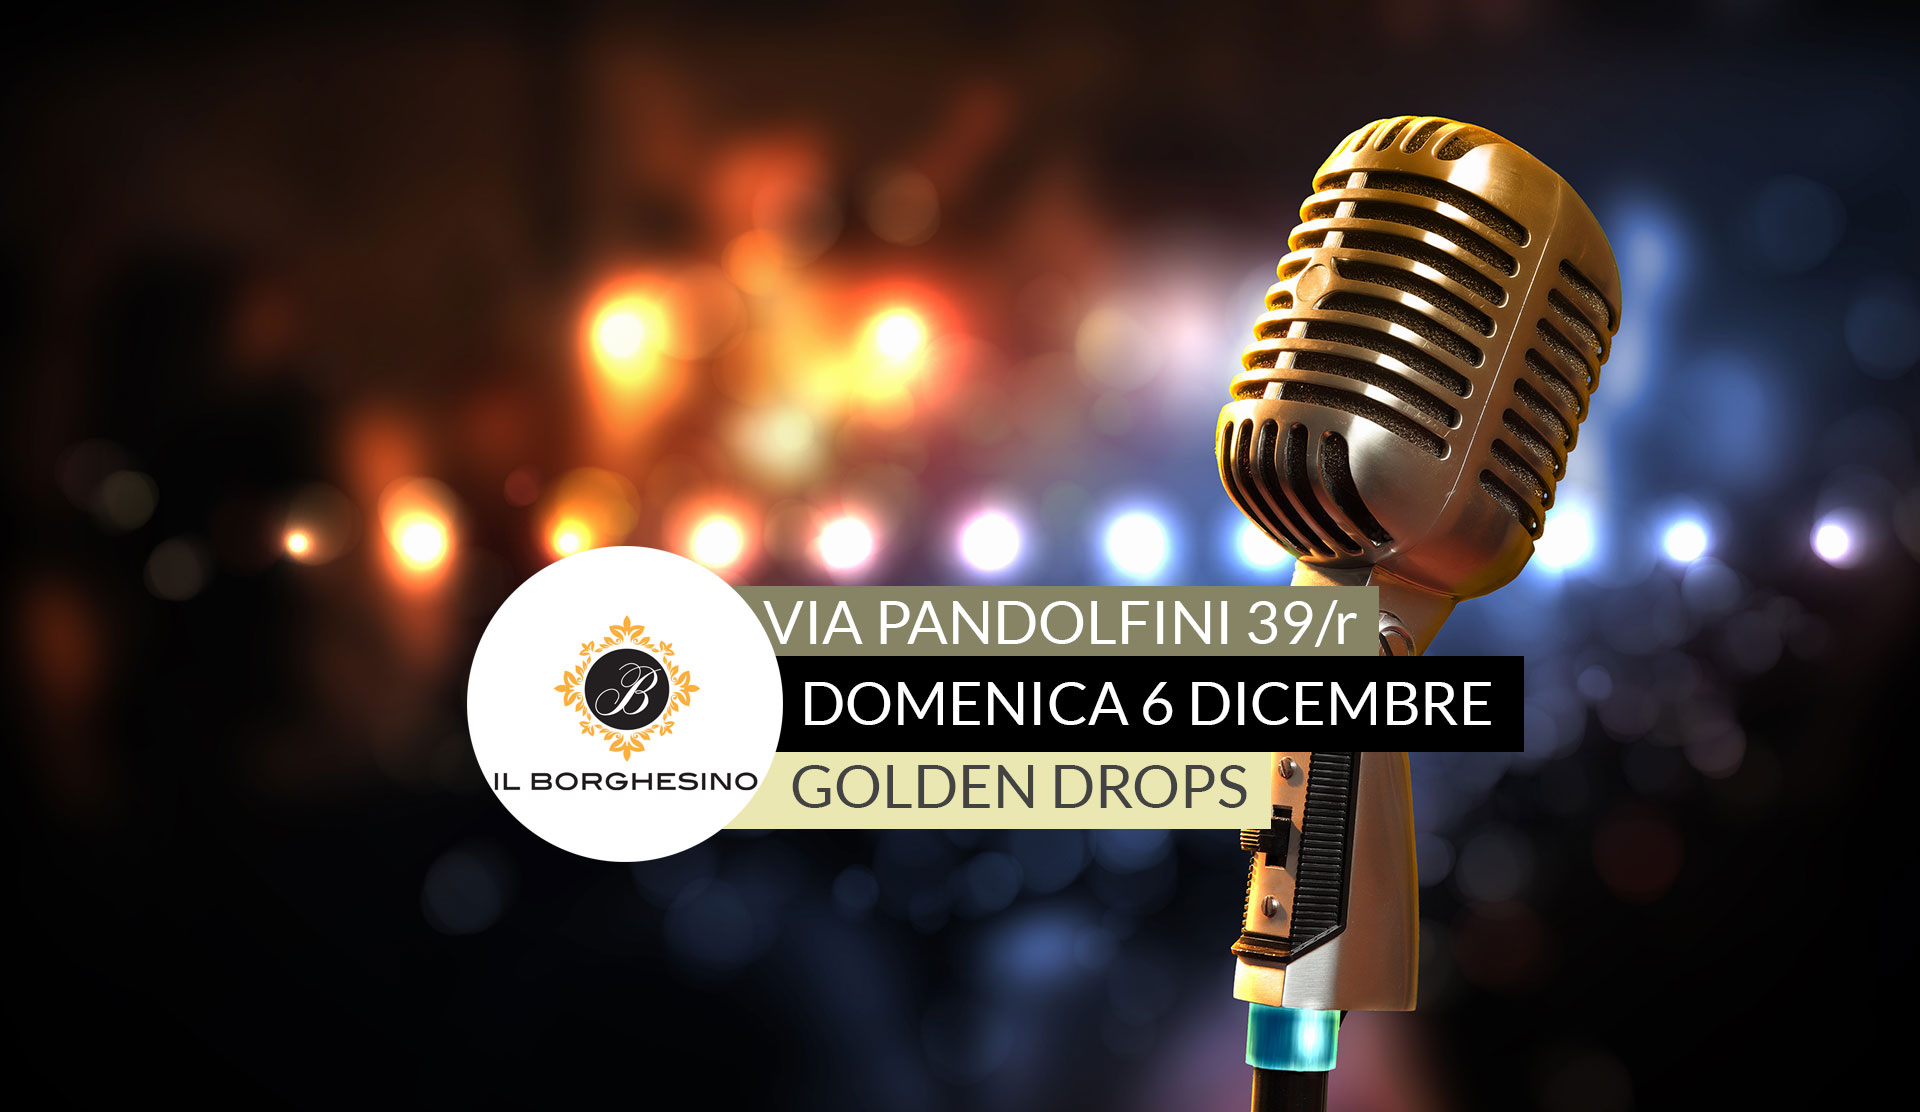 Domenica 6 Dicembre – Il Borghesino live music – Golden Drops